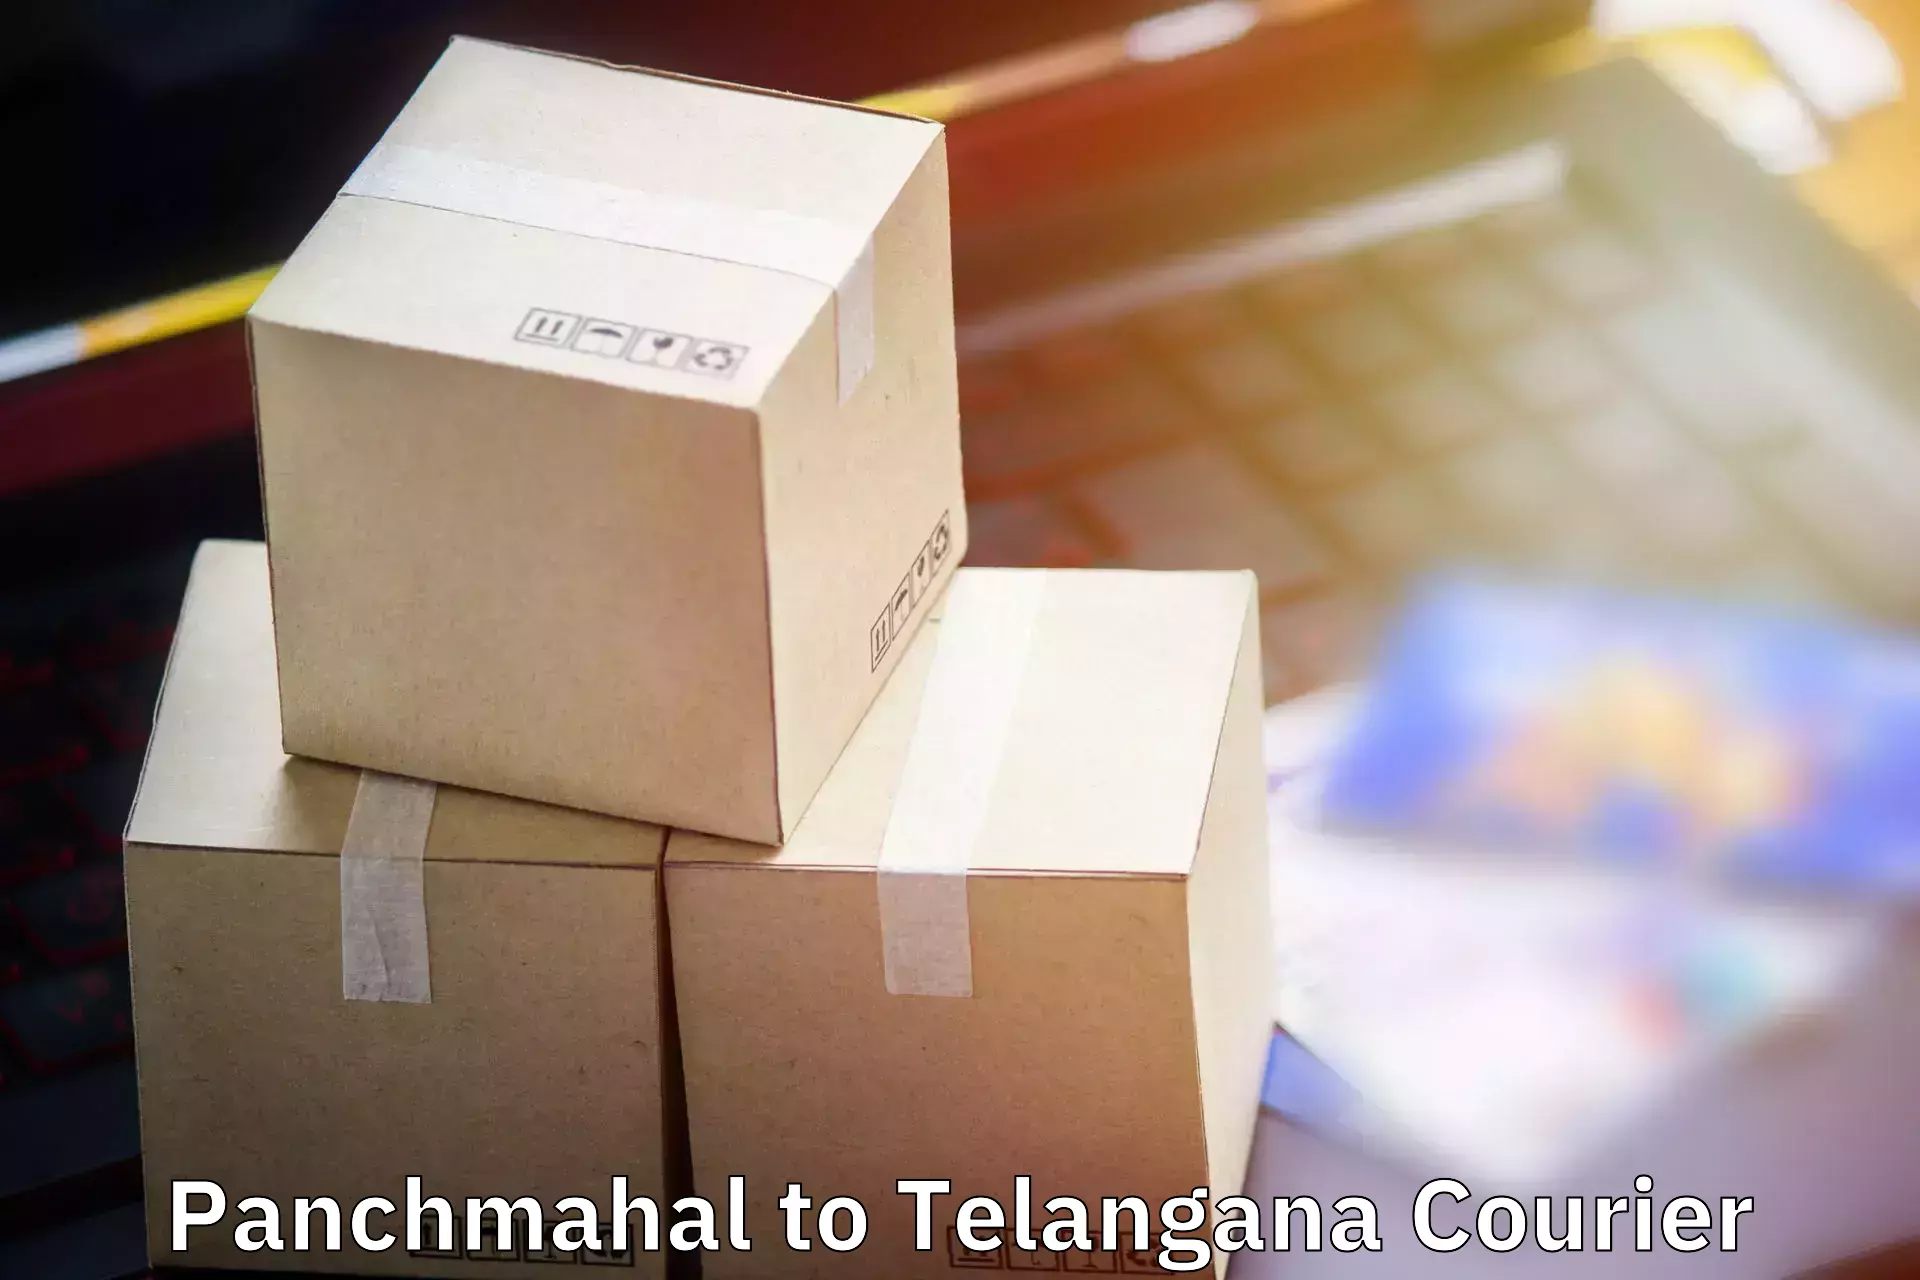 Baggage transport management Panchmahal to Pathipaka